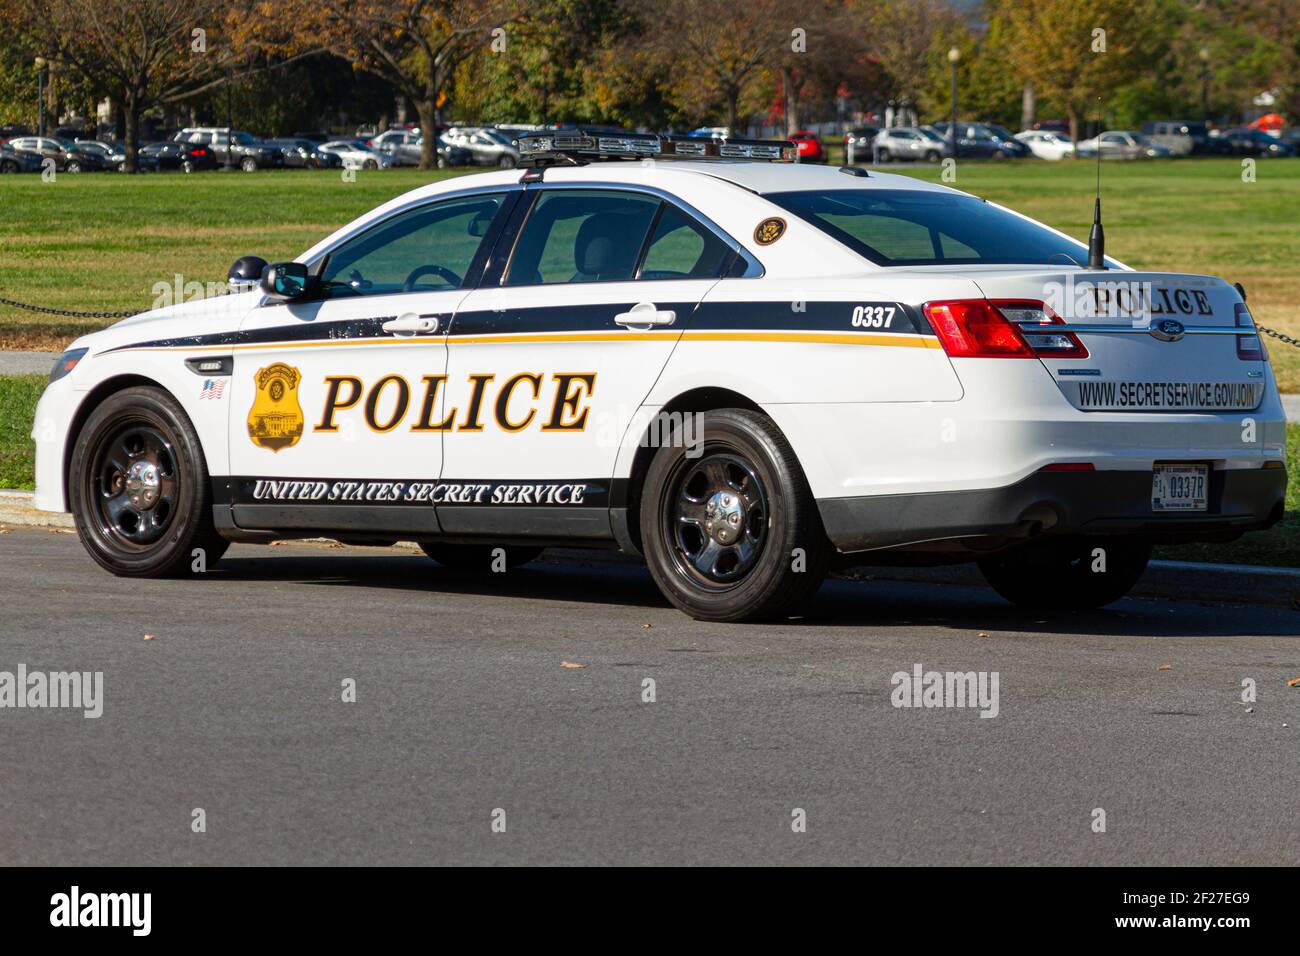 Washington DC, États-Unis 11-06-2020: Une voiture d'intercepteur de police Ford utilisée par la division en uniforme du Service secret des États-Unis est garée dans l'Ellip Banque D'Images